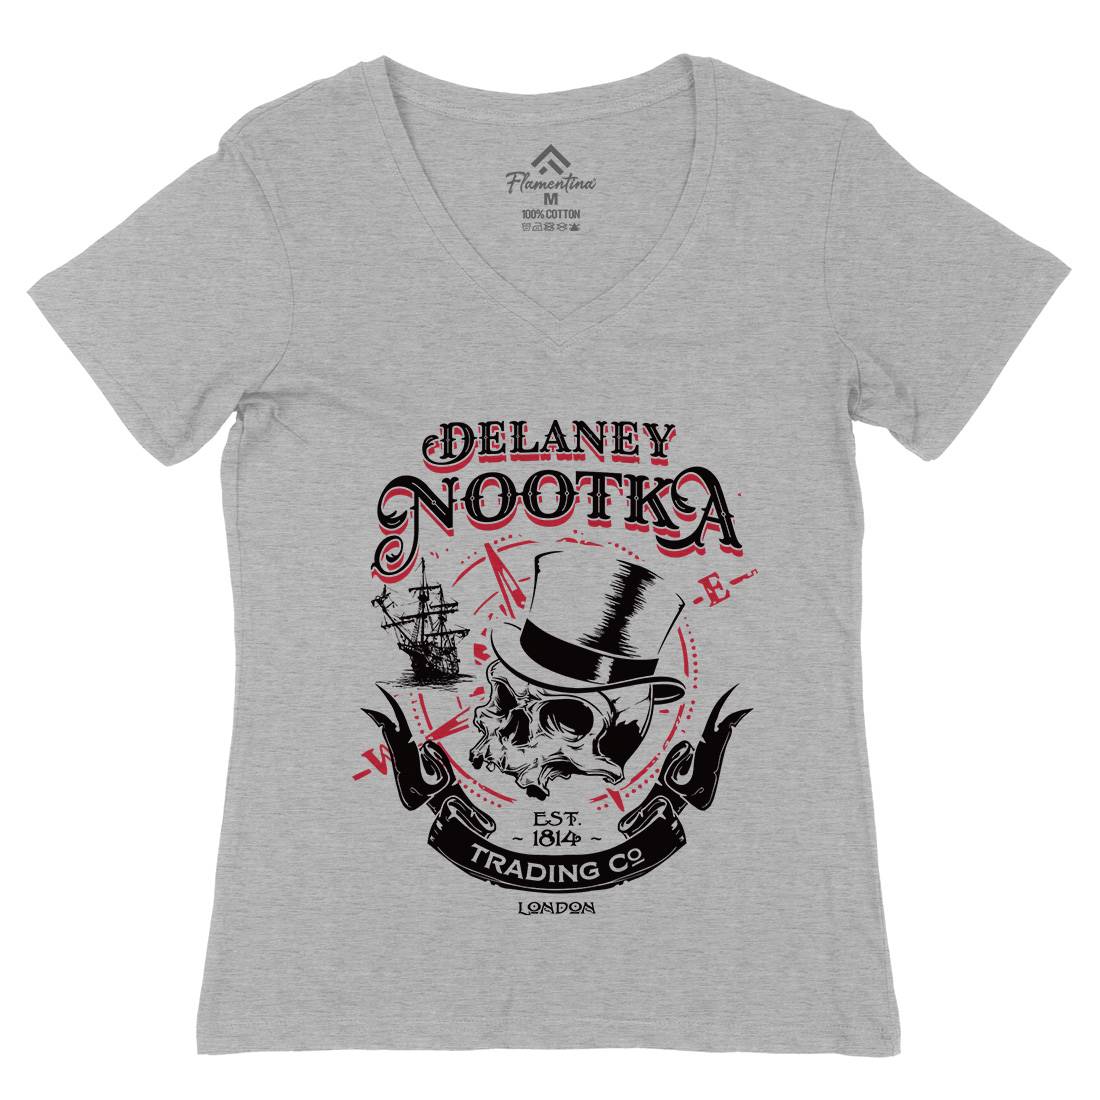 Delaney Nootka Womens Organic V-Neck T-Shirt Retro D183